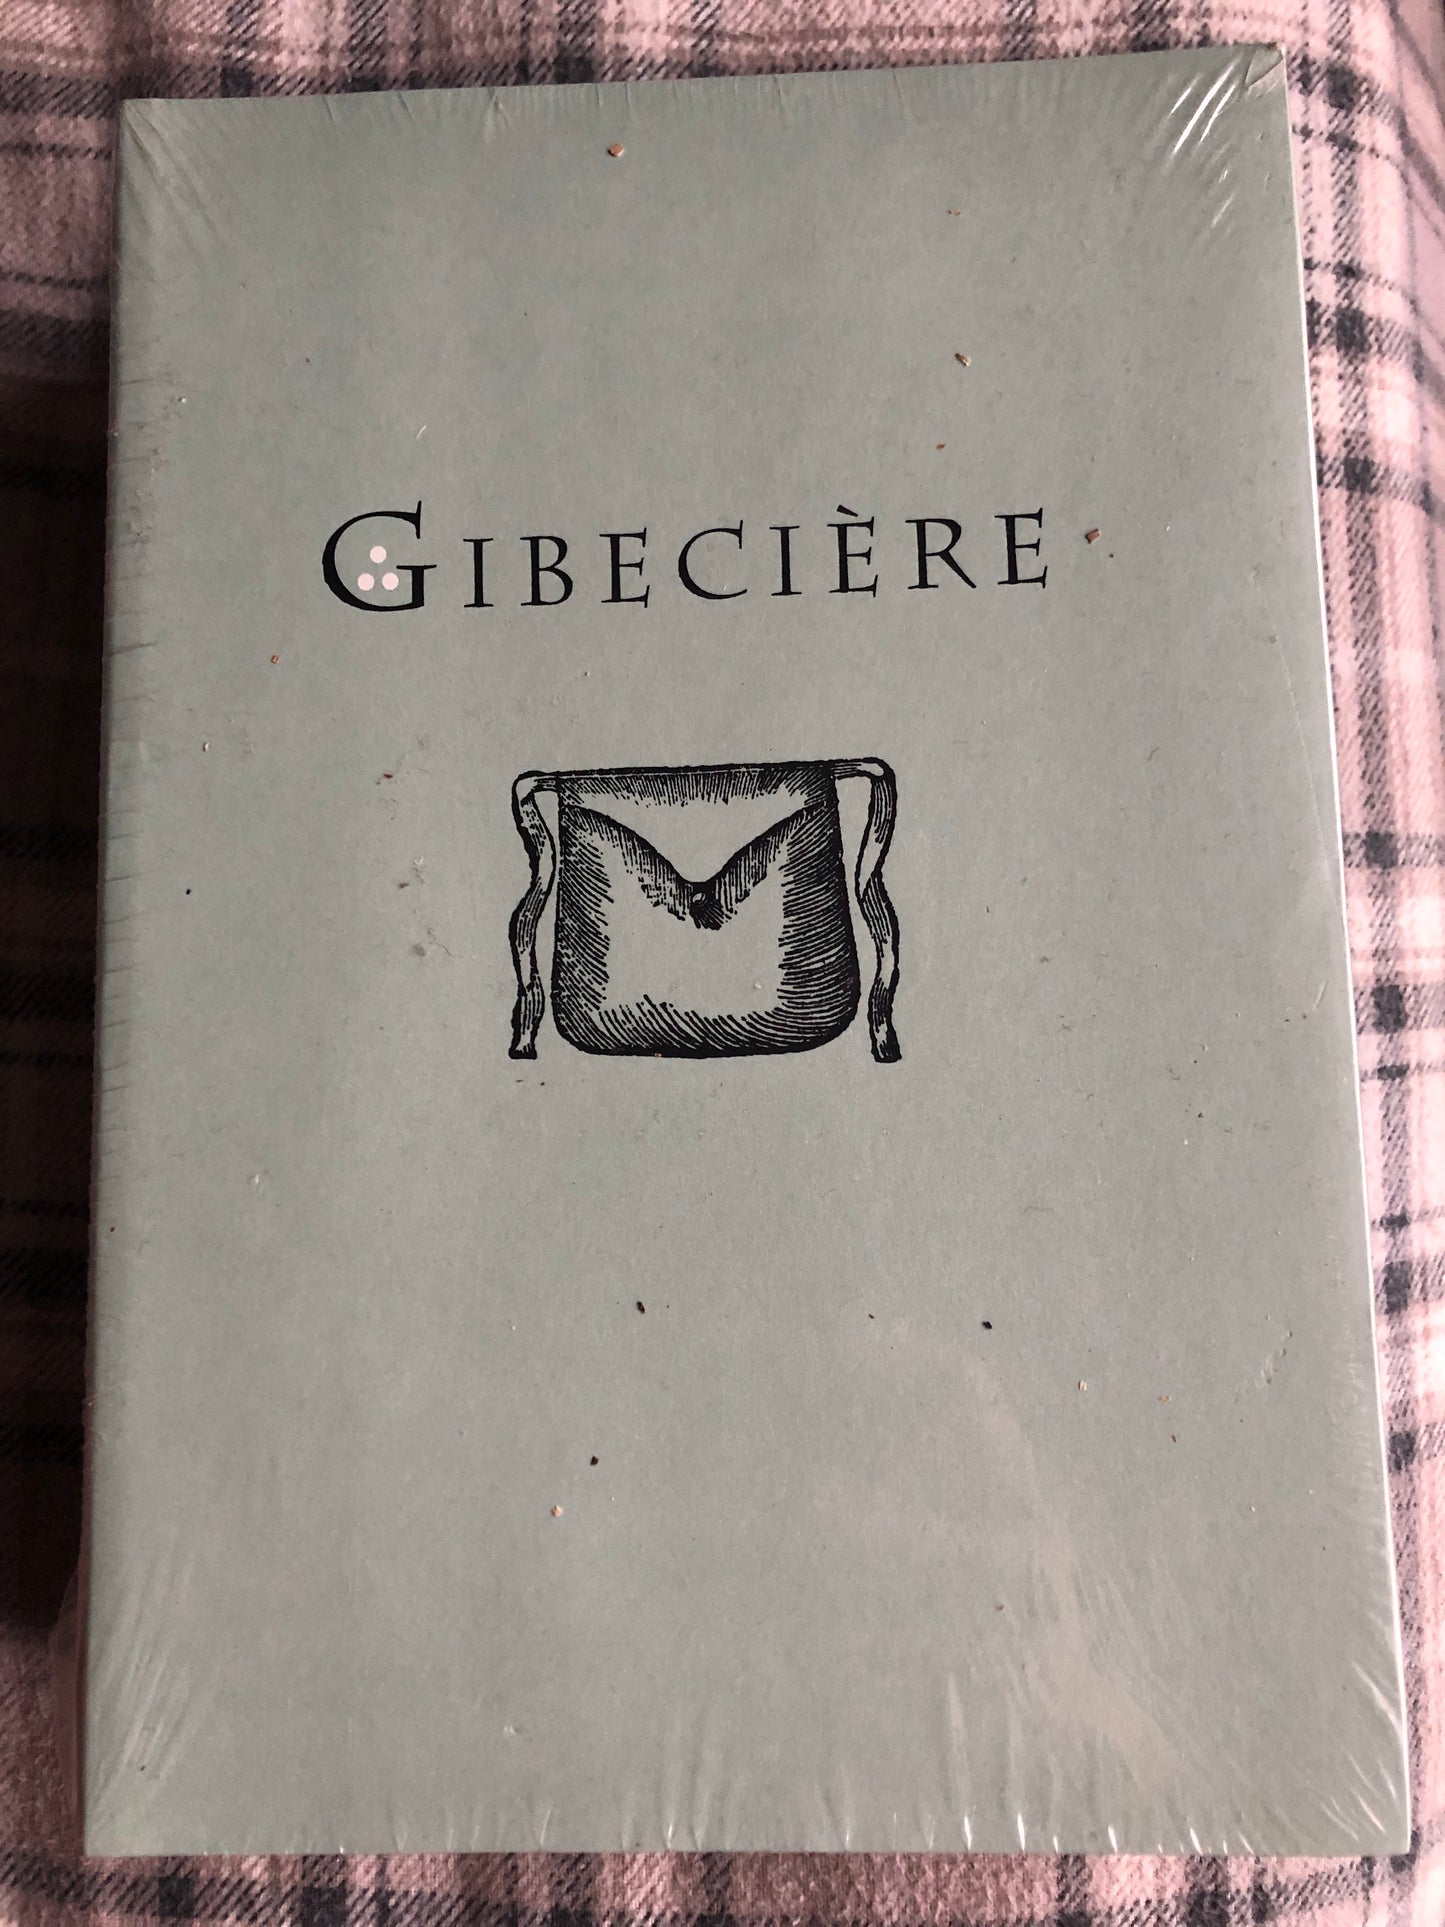 Gibeciere - Summer 2006